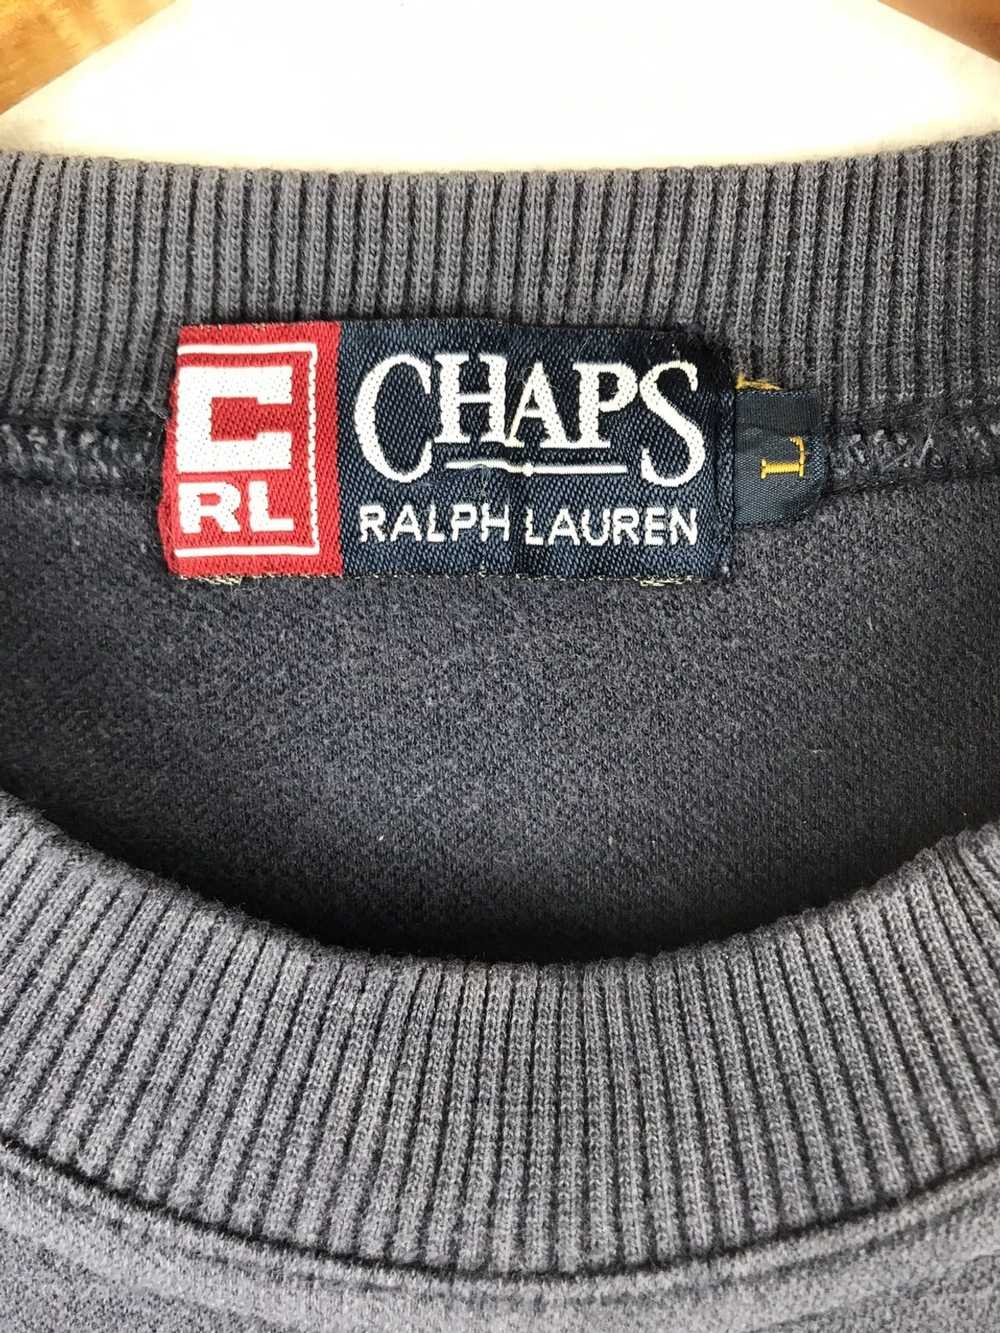 Chaps Ralph Lauren × Rare CHAPS RALPH LAUREN x RA… - image 3